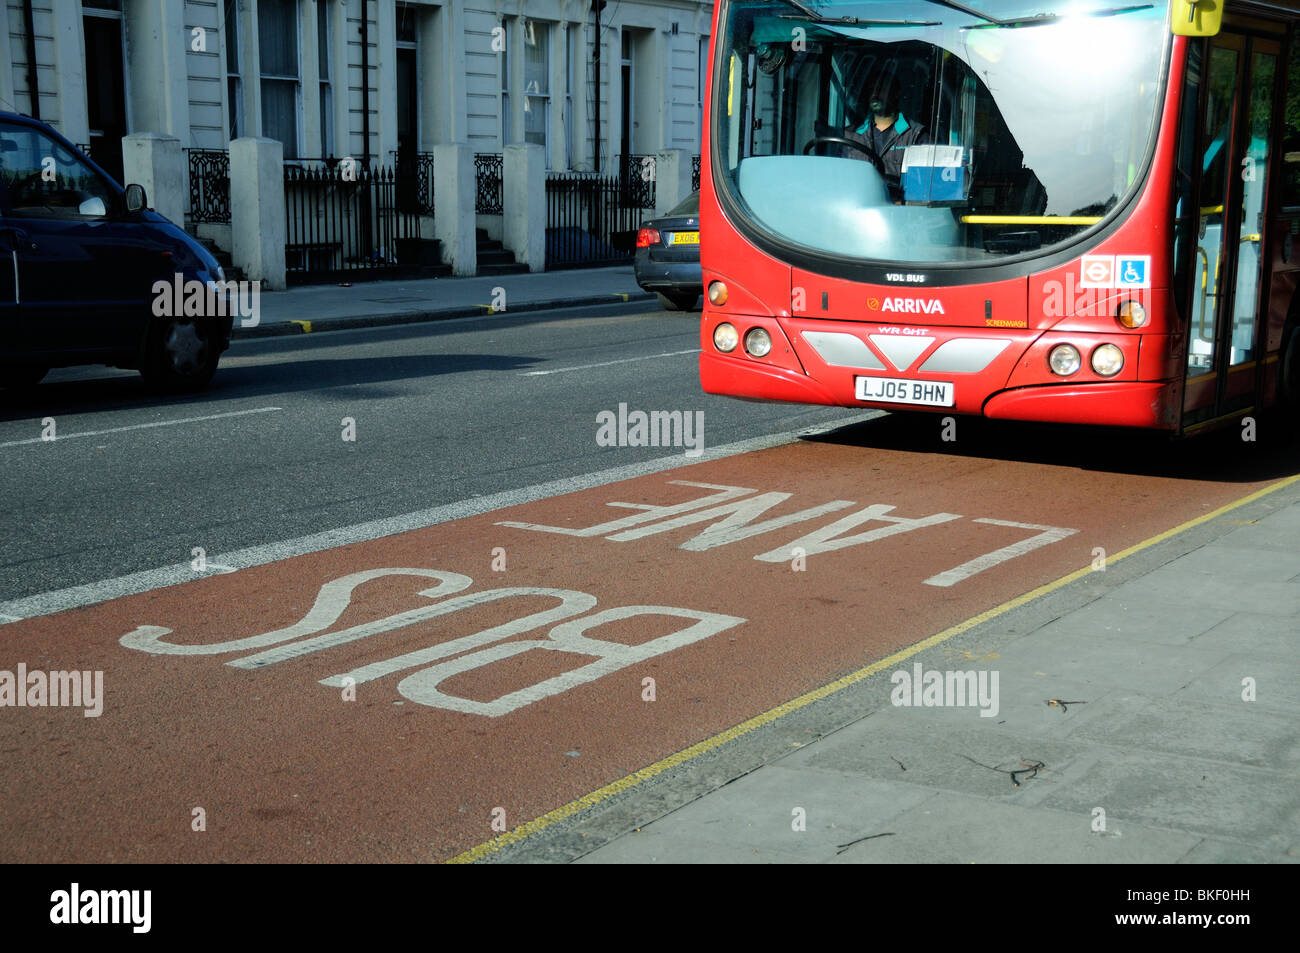 Sur le point d'entrer dans le bus lane bus Islington Londres Angleterre Royaume-uni Banque D'Images